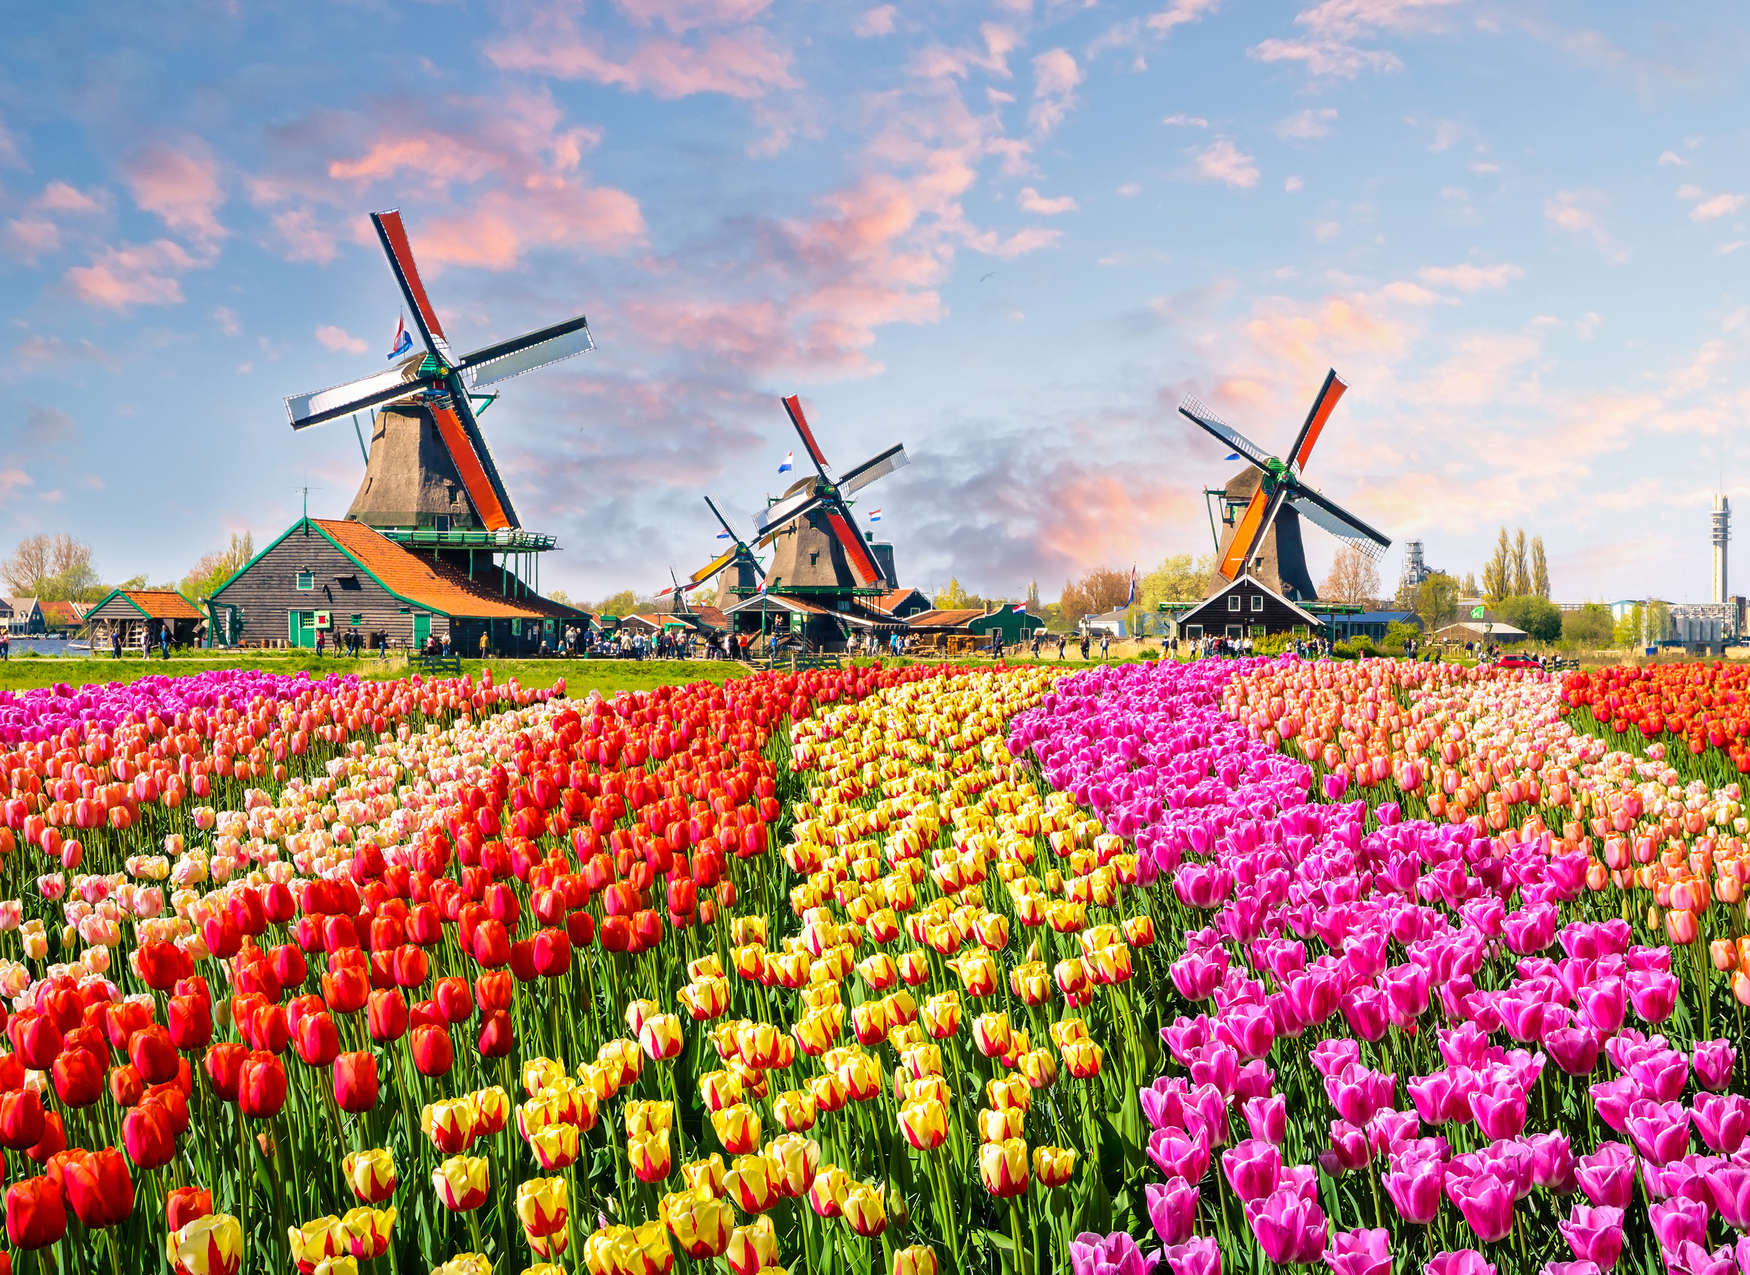             Papel pintado Holland Tulips & Pinwheel - Colorido, Marrón, Rosa
        